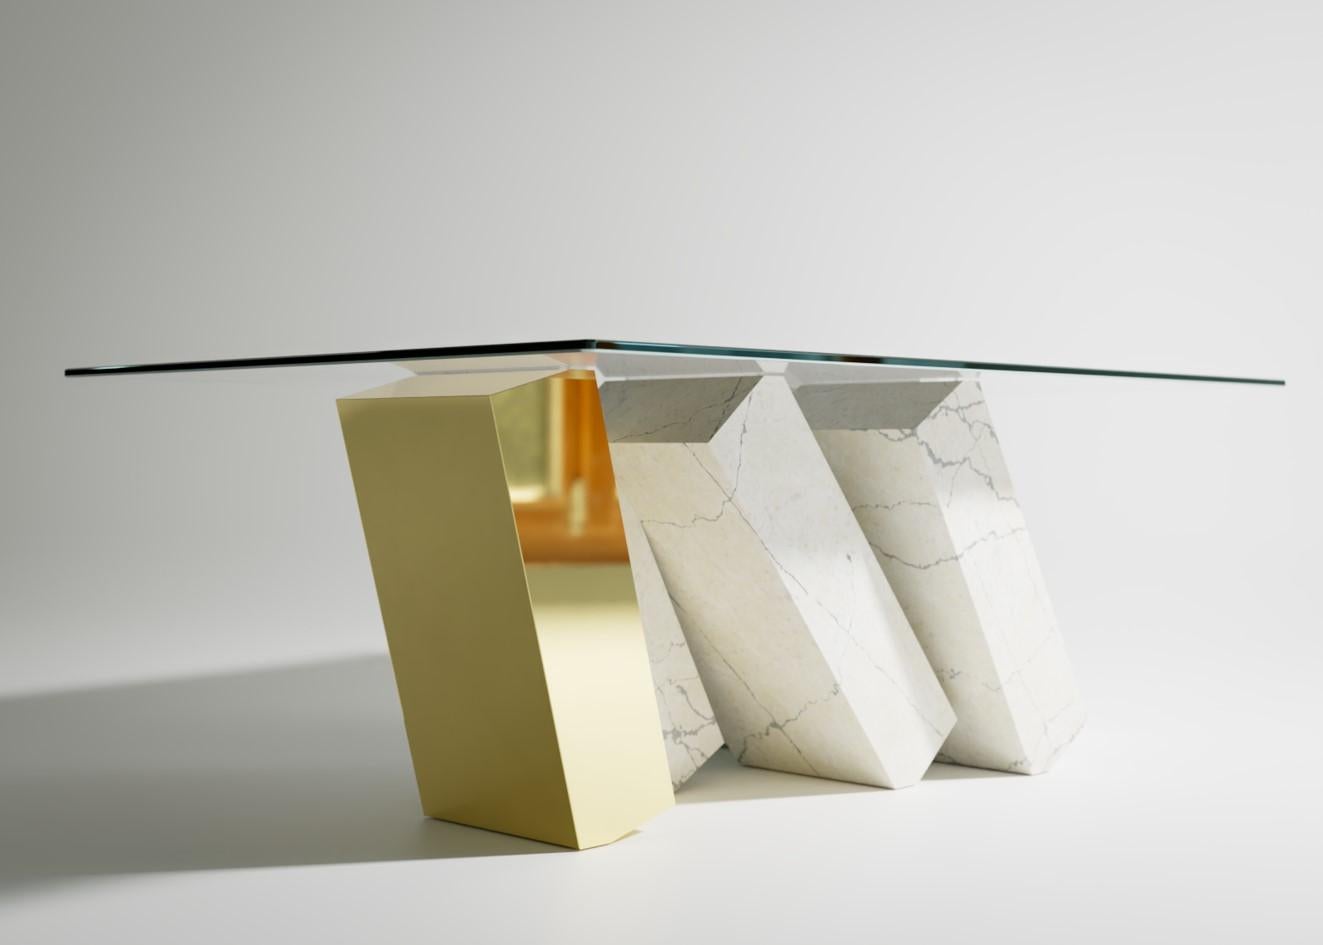 Der Megalith Couchtisch ist ein auffälliger Neuzugang zur Megalith-Kollektion; ein schillerndes, modernes Möbelstück von Christopher Duffy und eine luxuriöse Ergänzung des Wohnbereichs.

Eine gläserne Tischplatte balanciert über einer Reihe von